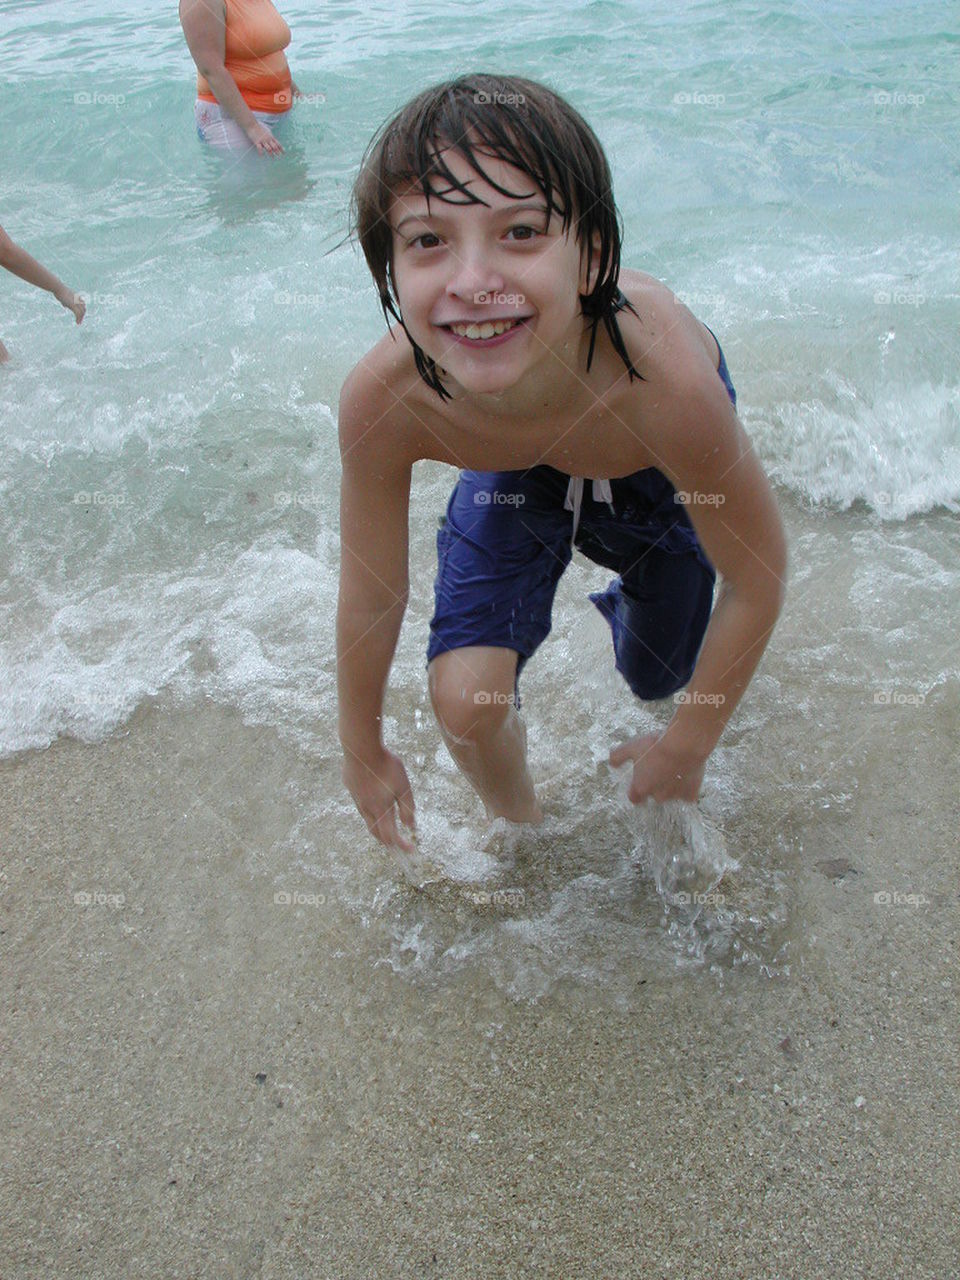 boy on beach